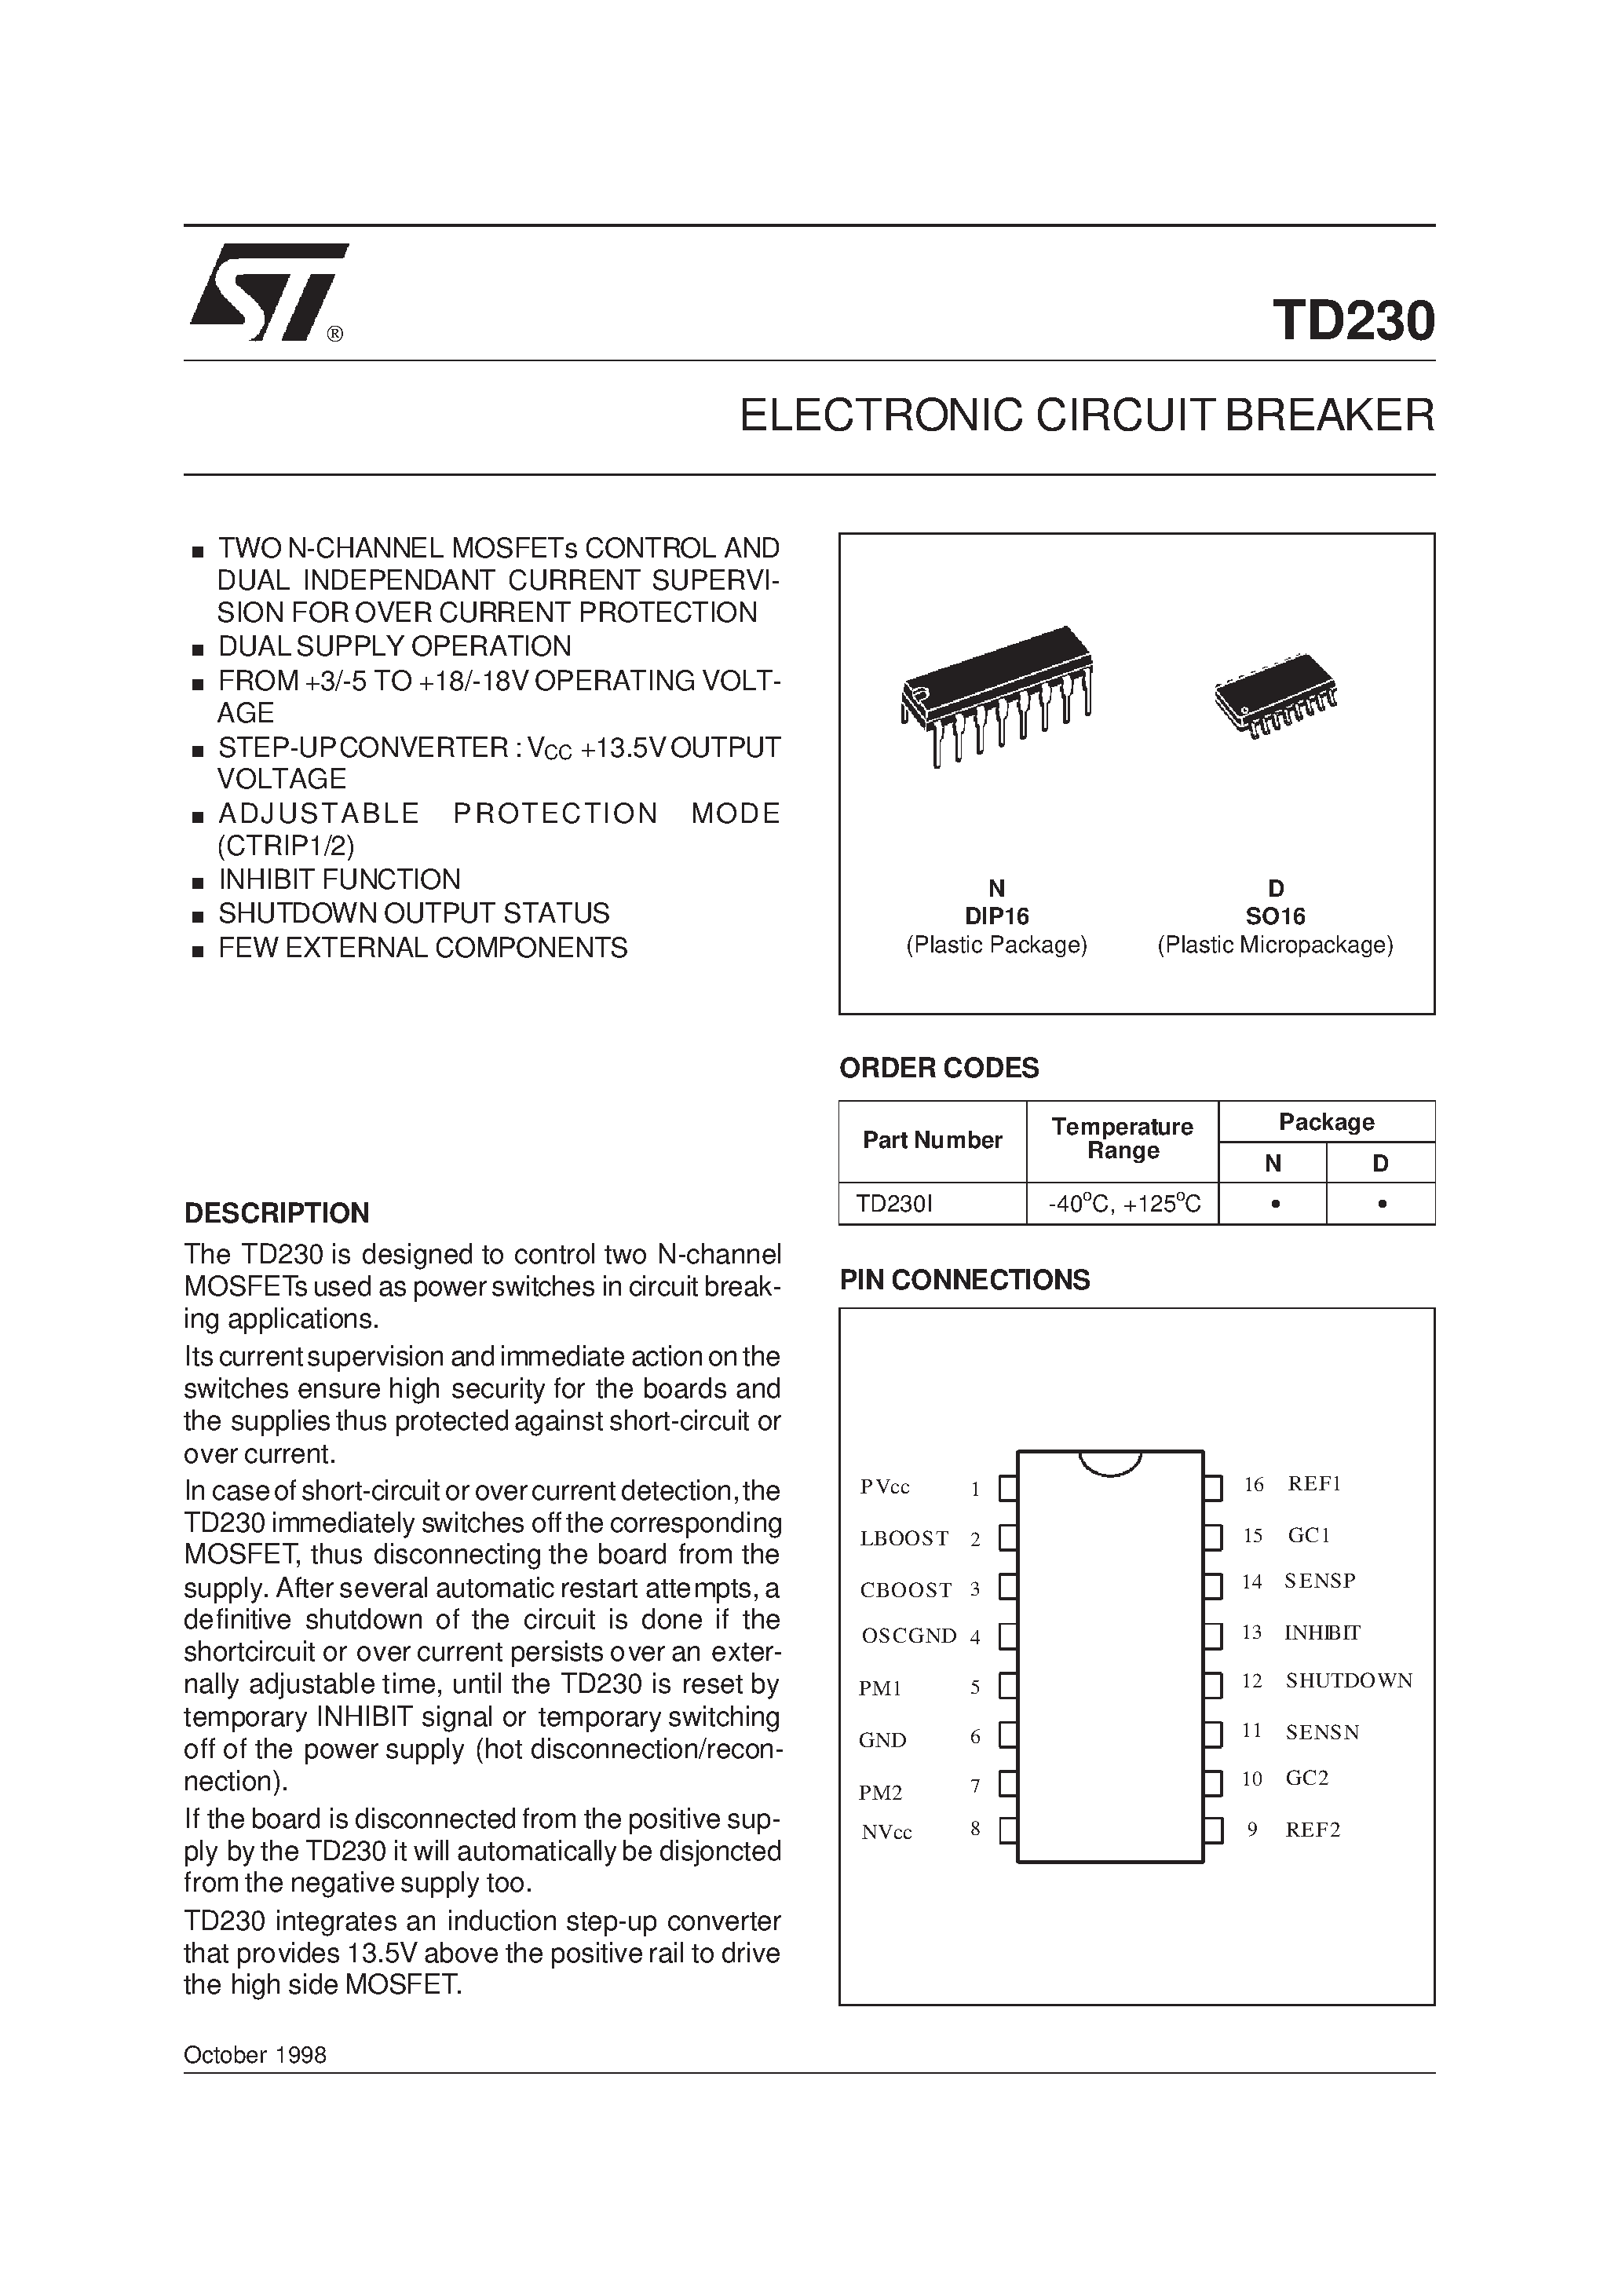 Datasheet TD230N - ELECTRONIC CIRCUIT BREAKER page 1